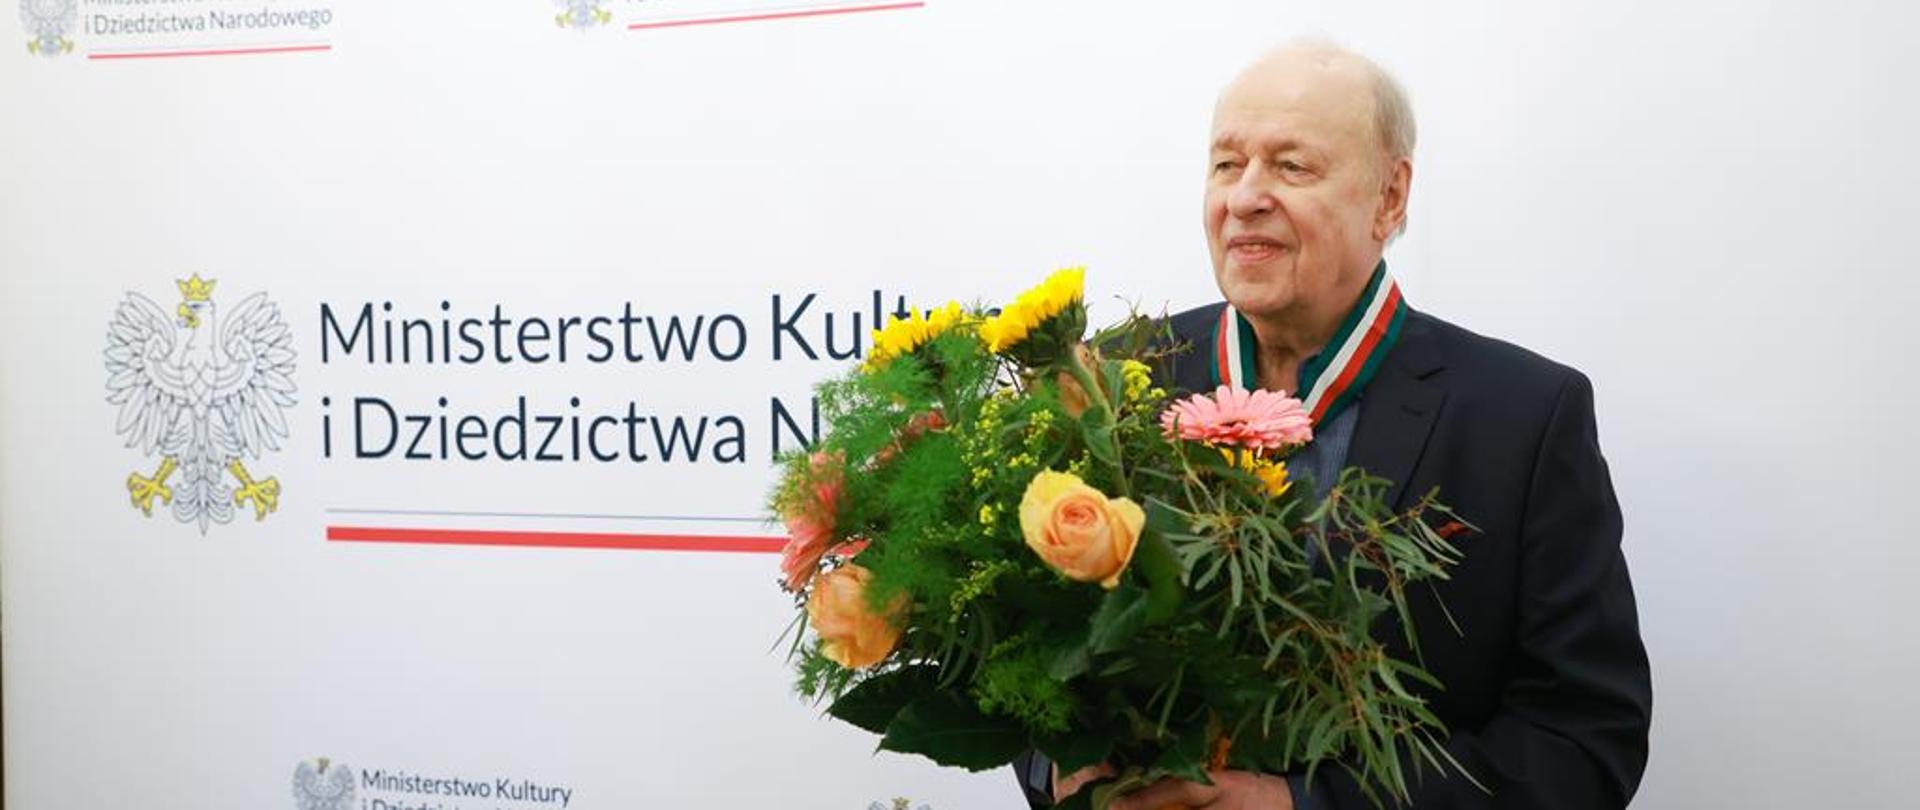 Złoty Medal „Zasłużony Kulturze Gloria Artis” dla Wojciecha Marczewskiego, fot. Danuta Matloch/MKiDN